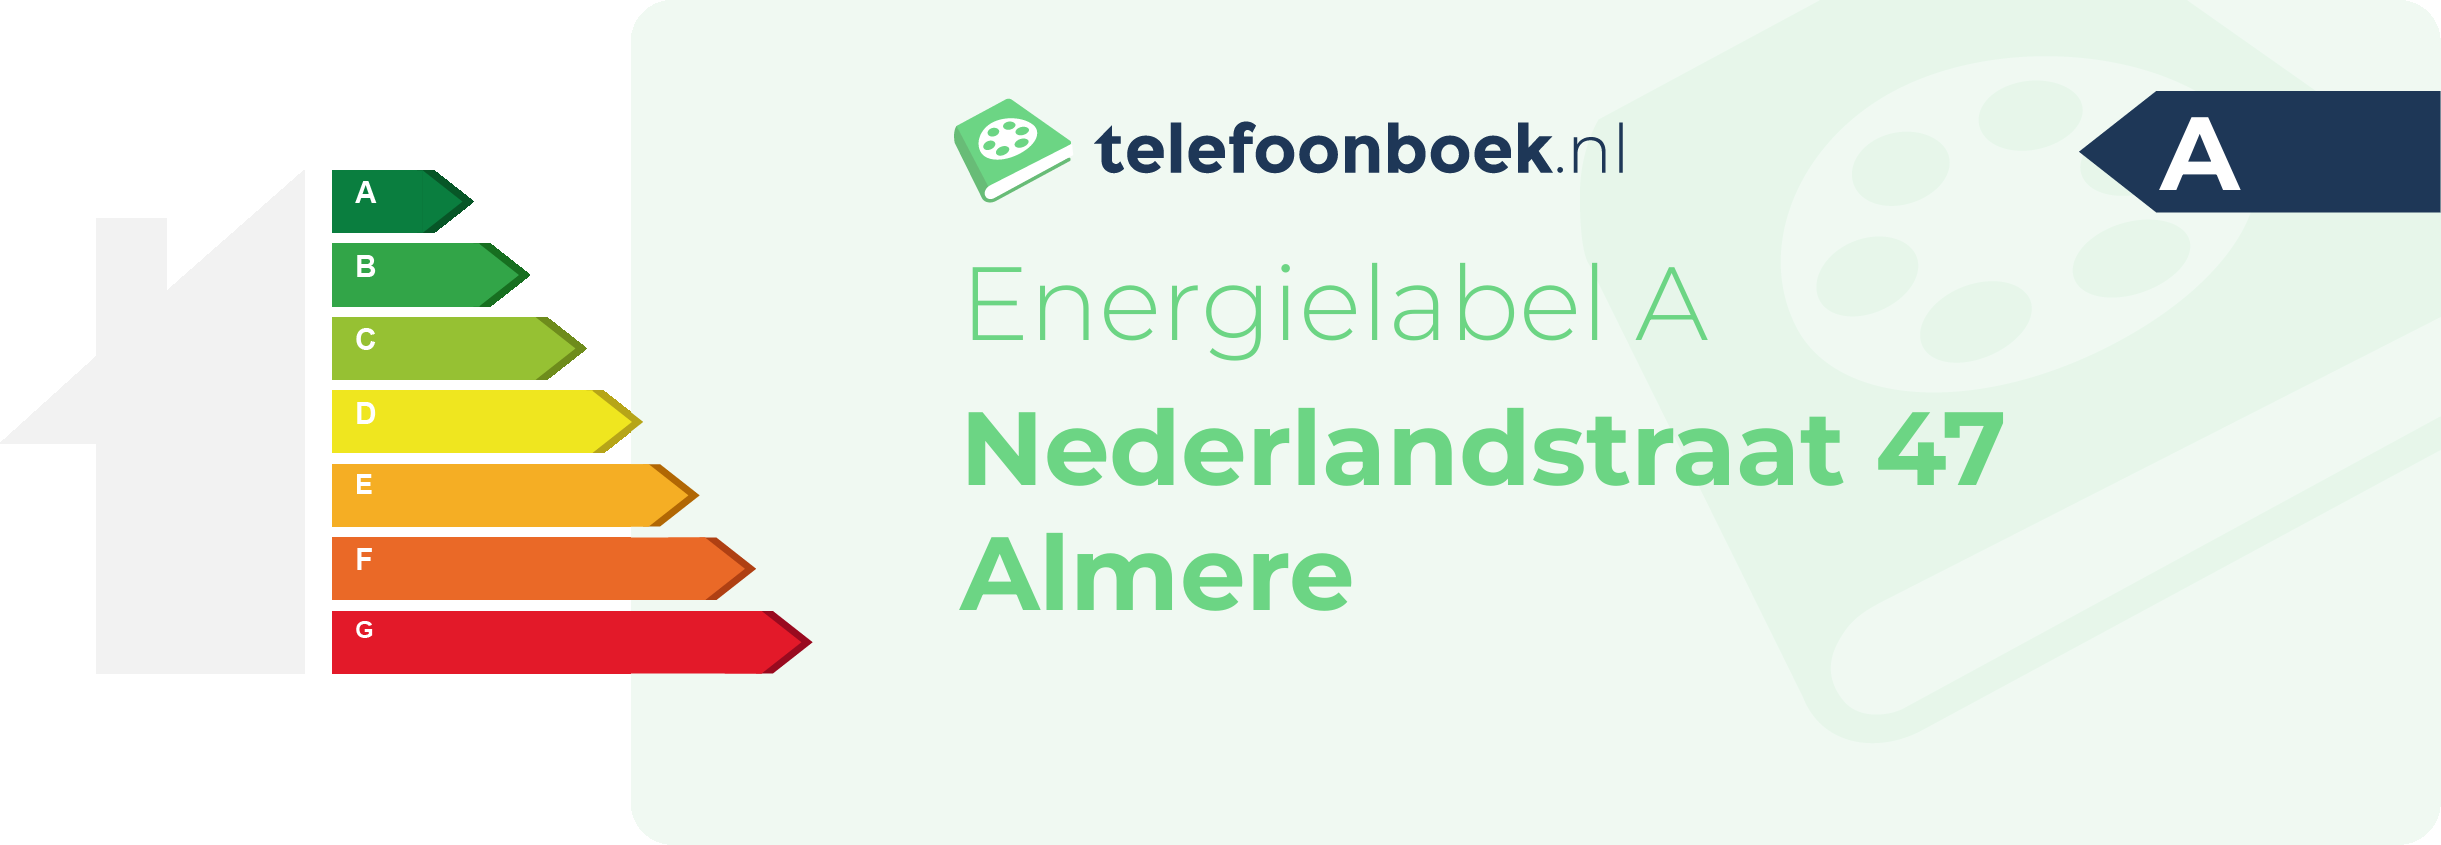 Energielabel Nederlandstraat 47 Almere